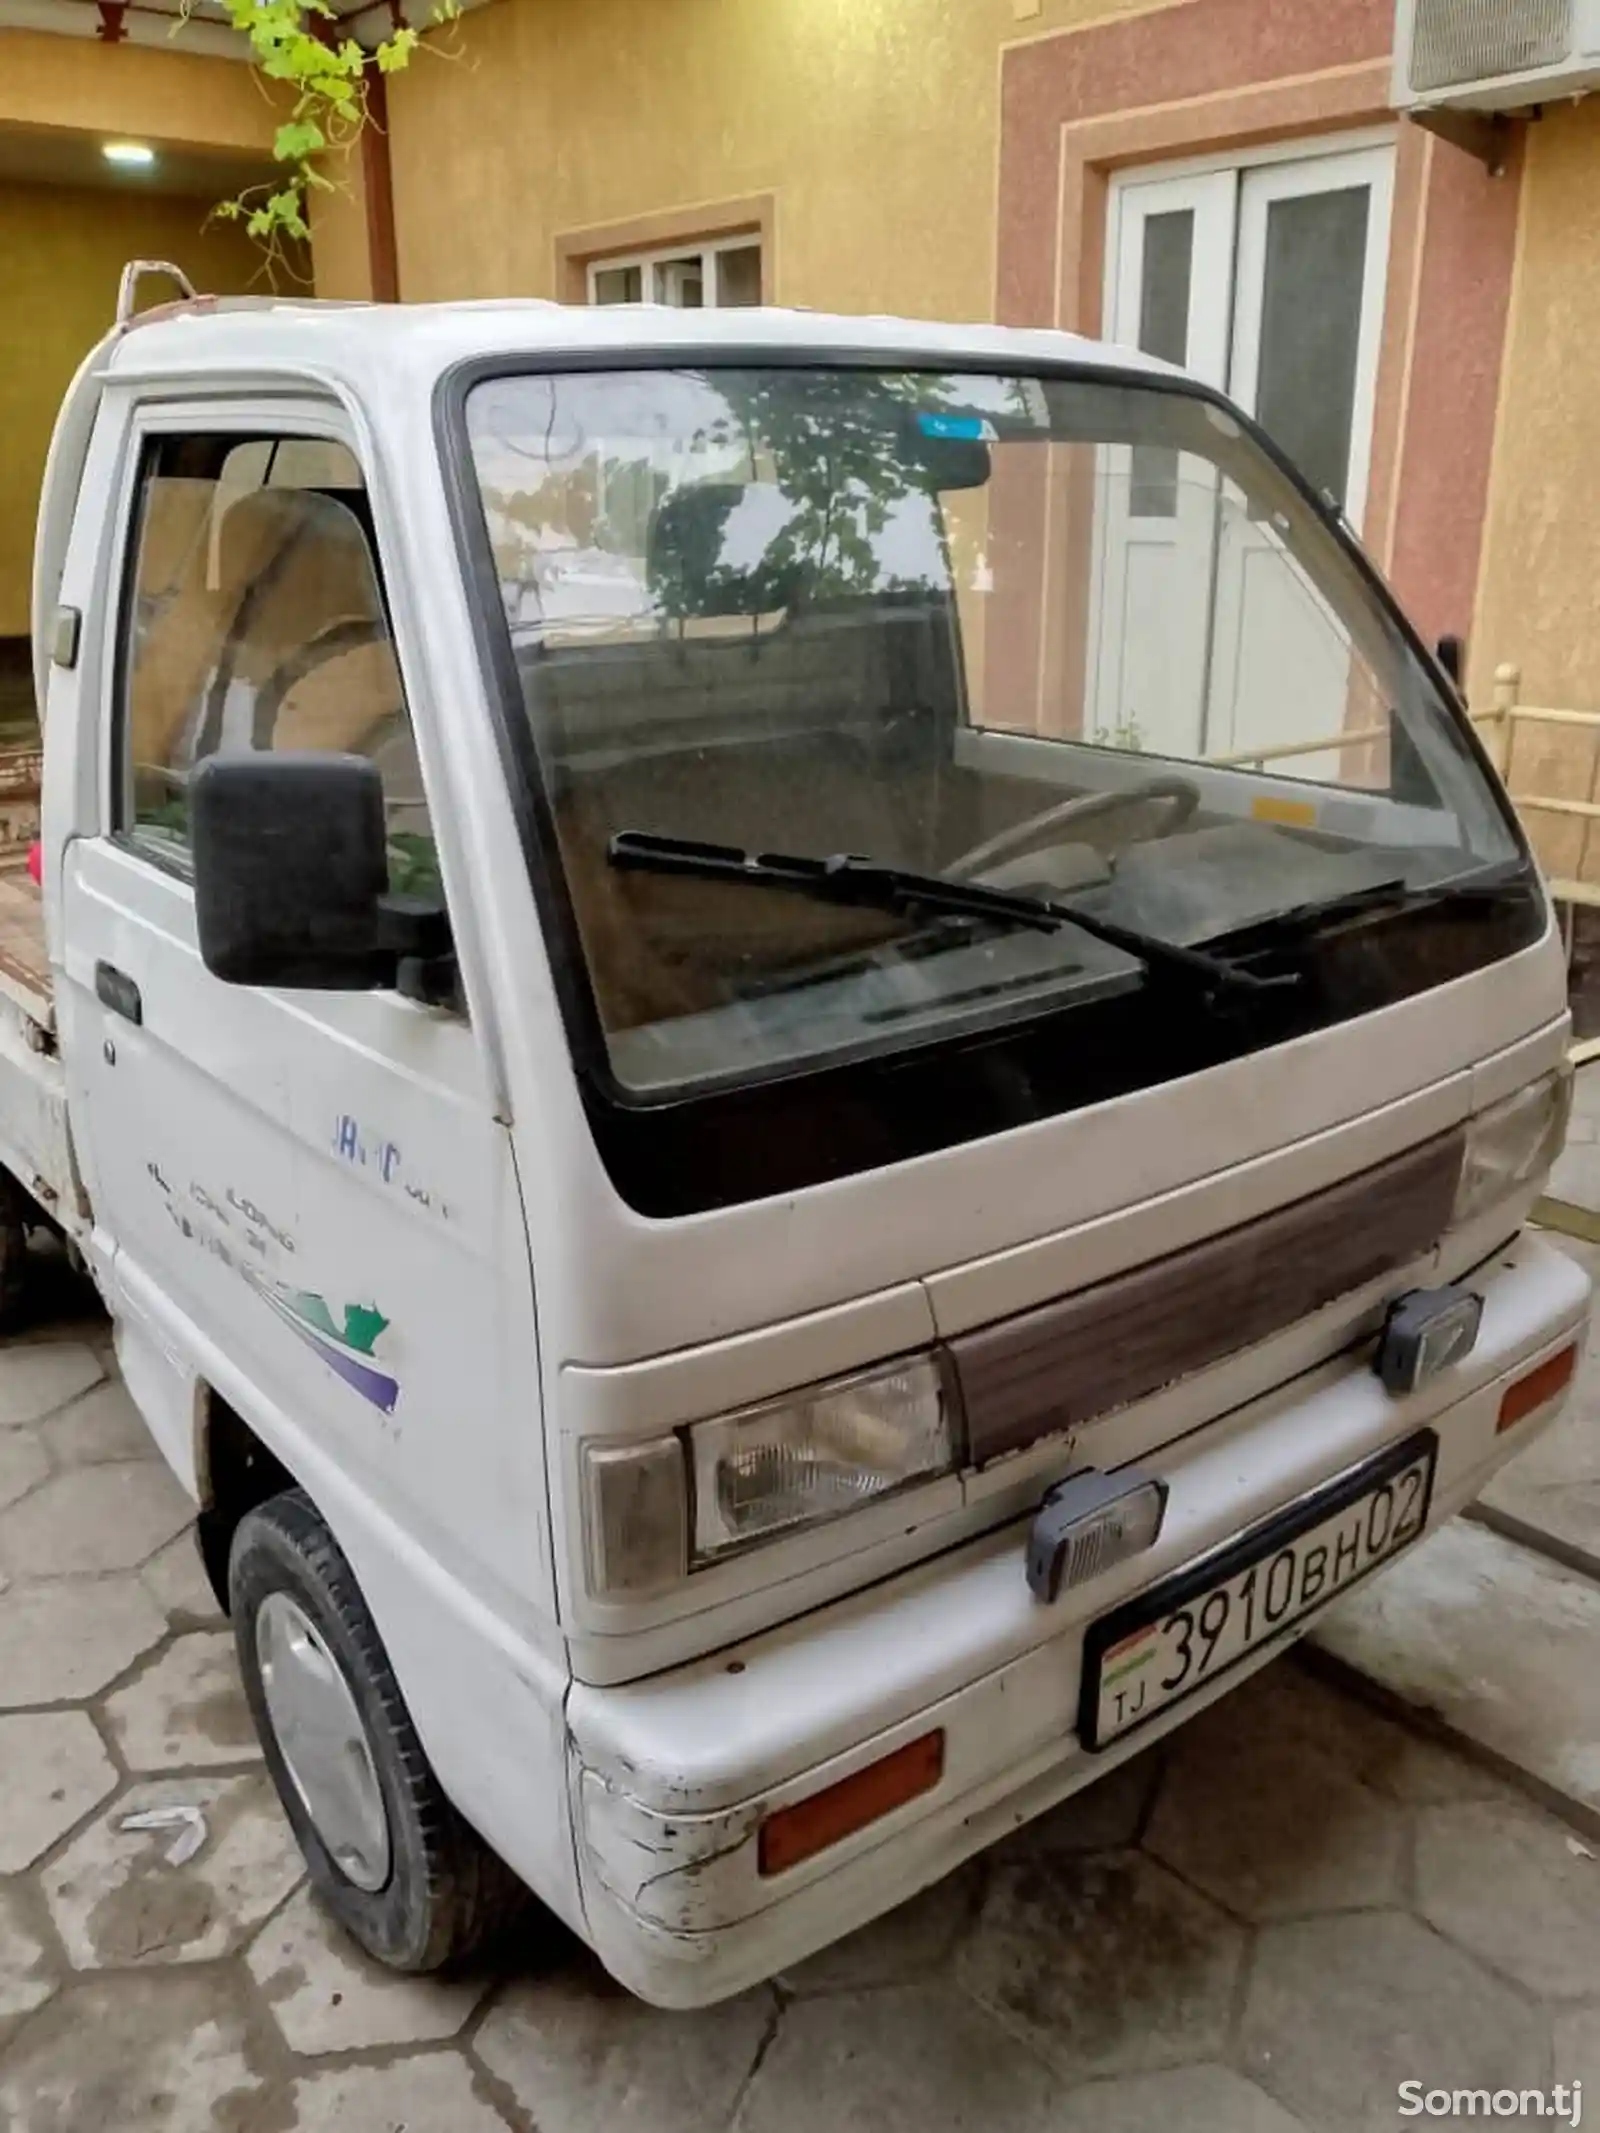 Бортовой автомобиль Daewoo Labo, 1996-4